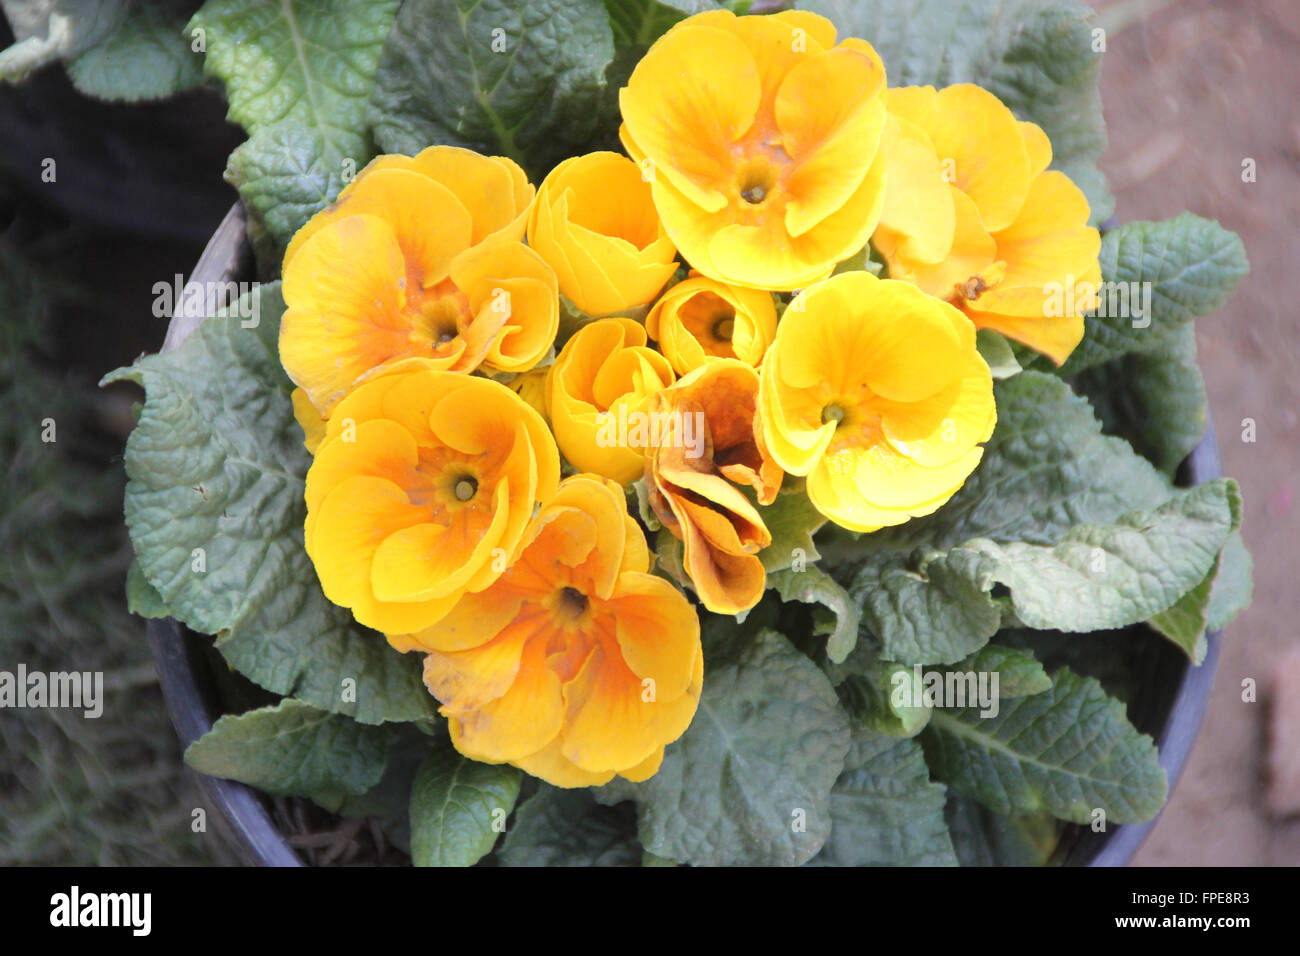 Primula jaune, famille Primulaceae, cultivé avec des herbes ornementales rosette de feuilles, fleurs jaune or dans un cluster Banque D'Images